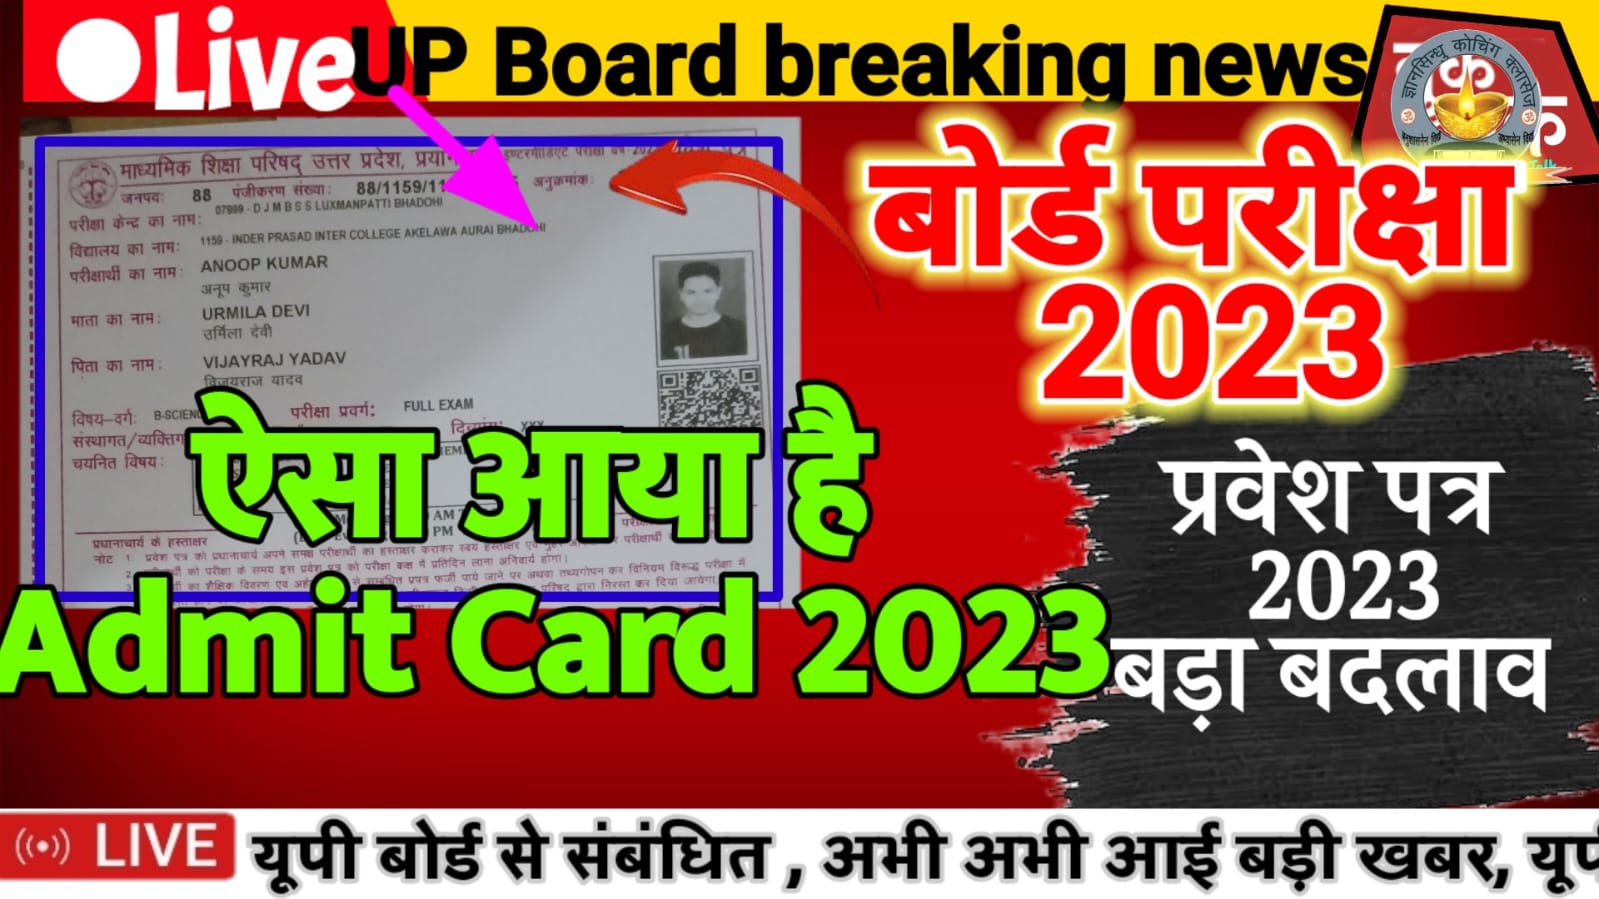 UP Board Admit card Released today - यूपी बोर्ड कक्षा 12 का प्रवेश पत्र हुआ जारी - इस बार ऐसा आया है - जल्दी देखो 